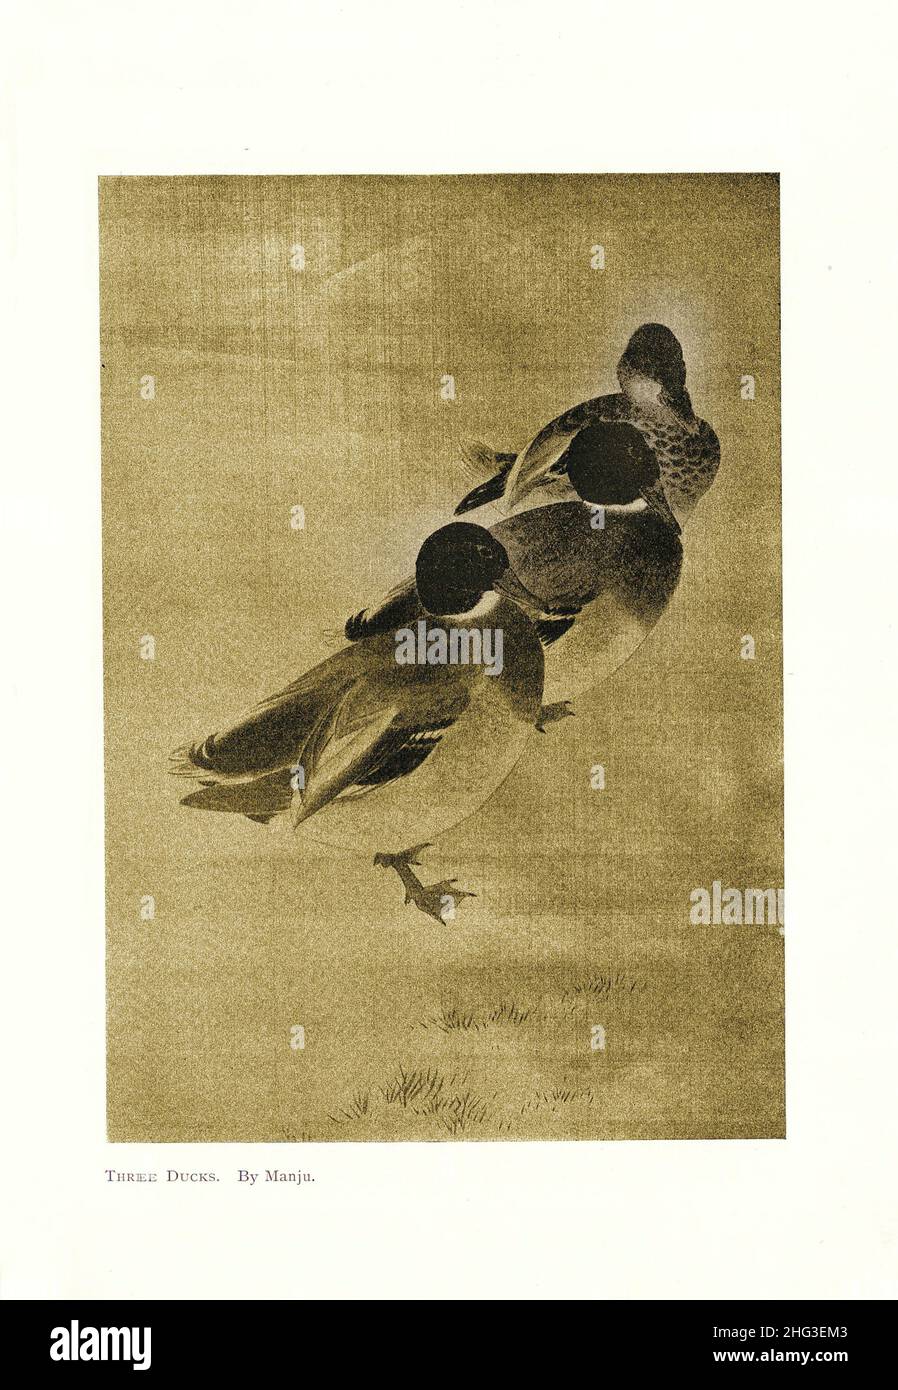 Chinesisches mittelalterliches Gemälde von drei Enten. Von Manju. Reproduktion der Buchdarstellung von 1912 Stockfoto